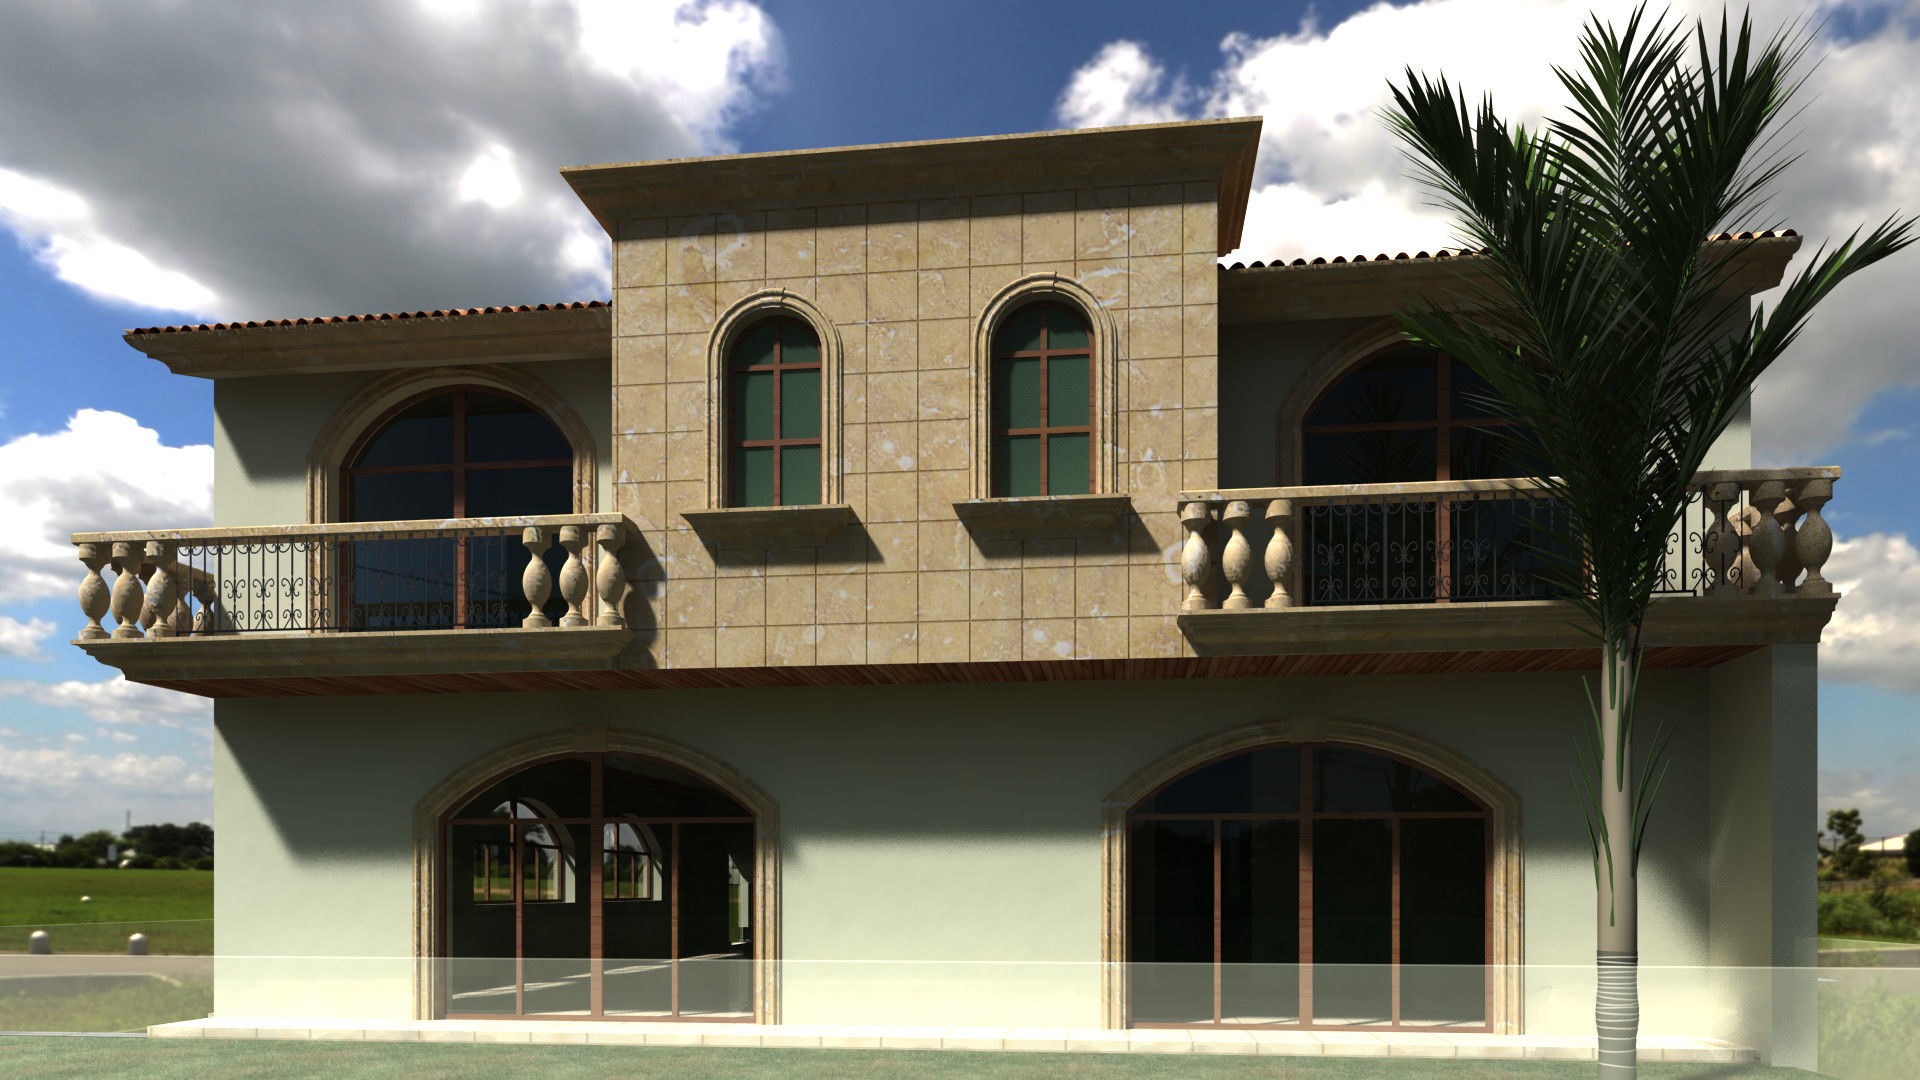 CASA MIRANDA SG Huerta Arquitecto Cancun Casas clásicas Piedra arquitectos veracruz,casas clasicas,residencias de lujo,arquitectos cancun